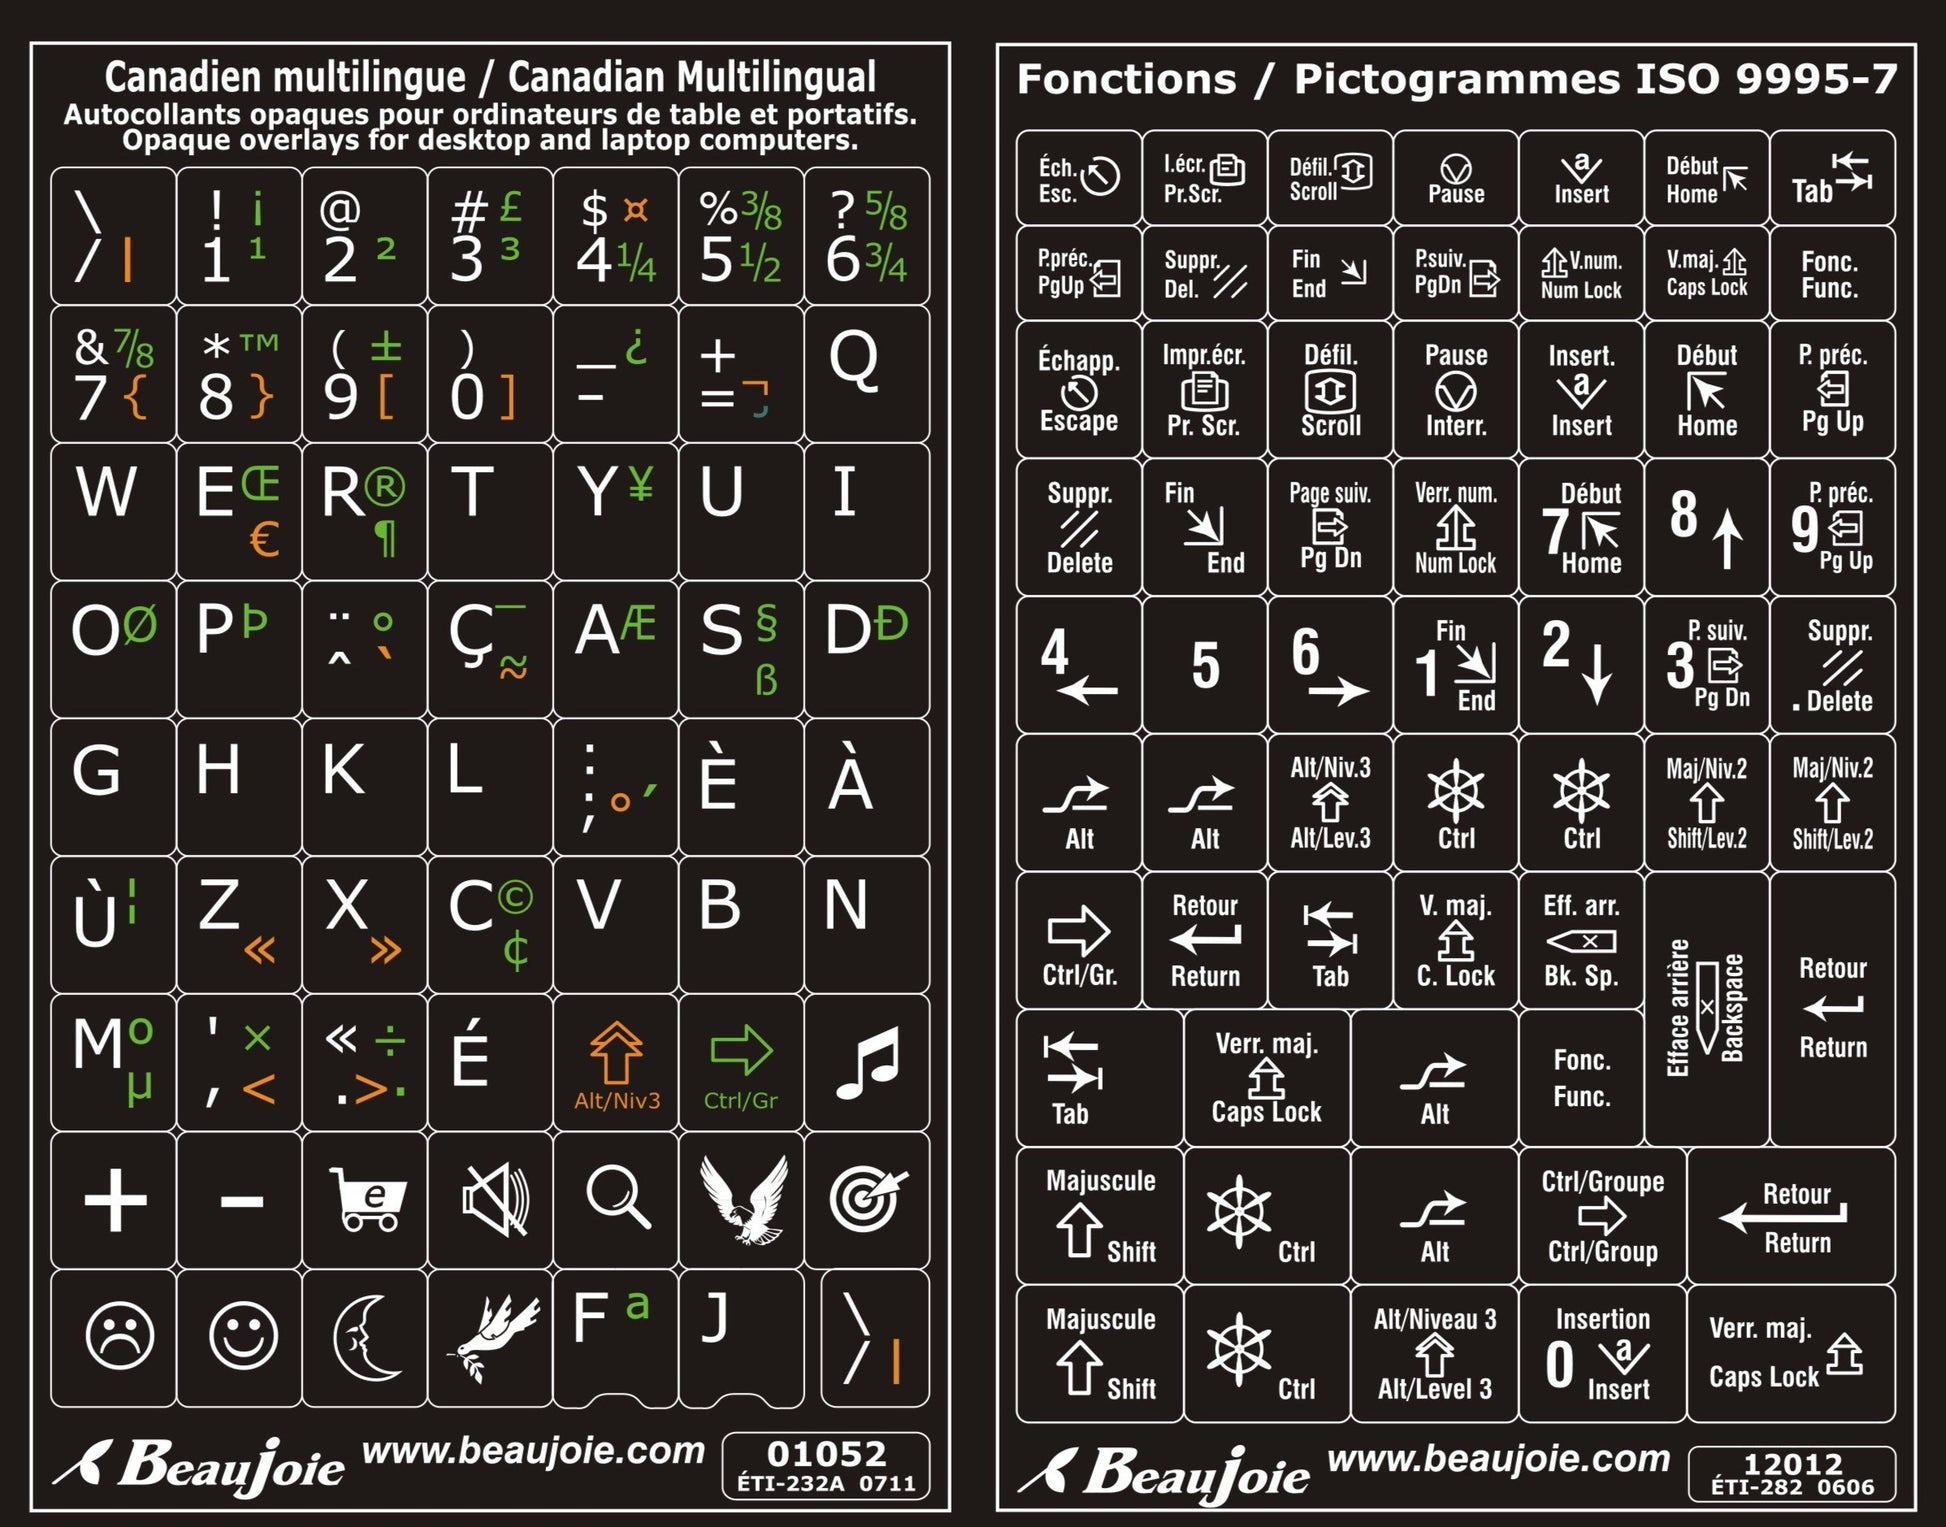 Autocollants partie centrale clavier Windows canadien multilingue fonctions bilingues  01052-12012